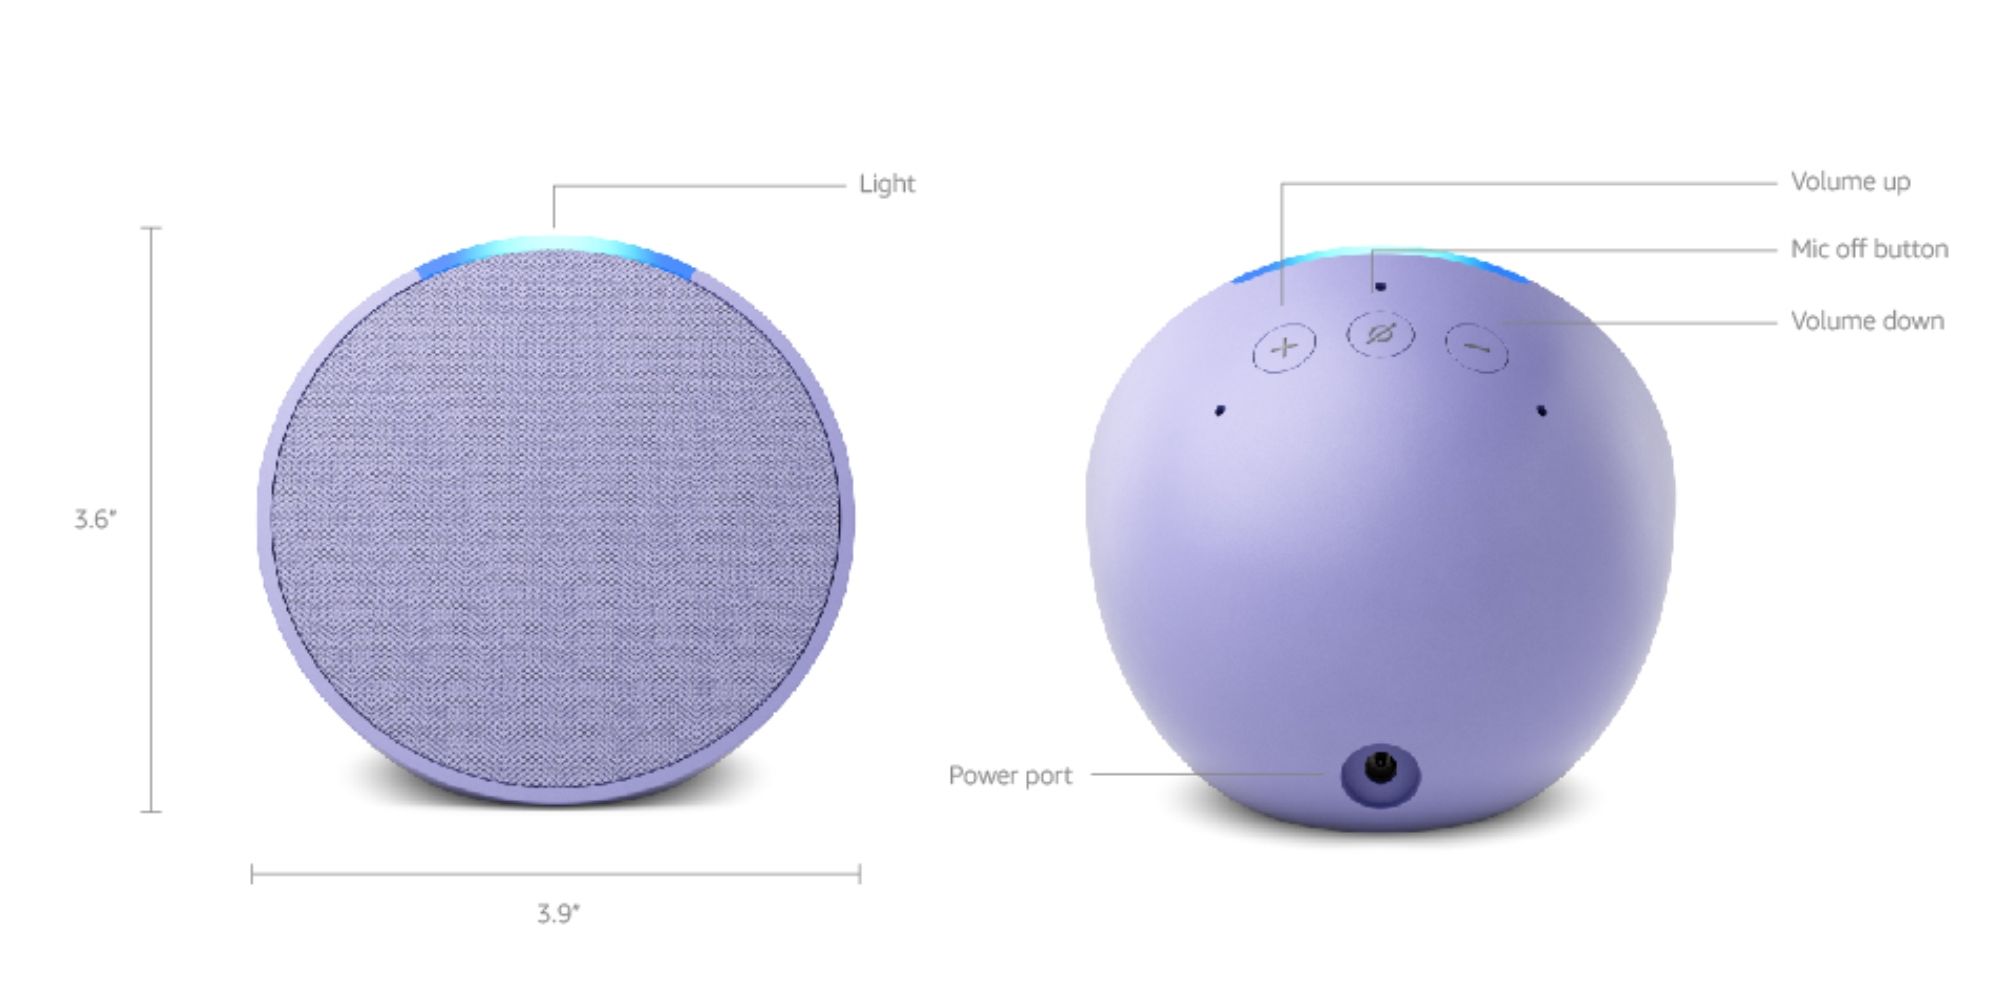 Buy  Echo Pop 2023 Smart Speaker with Alexa - Black, Smart speakers